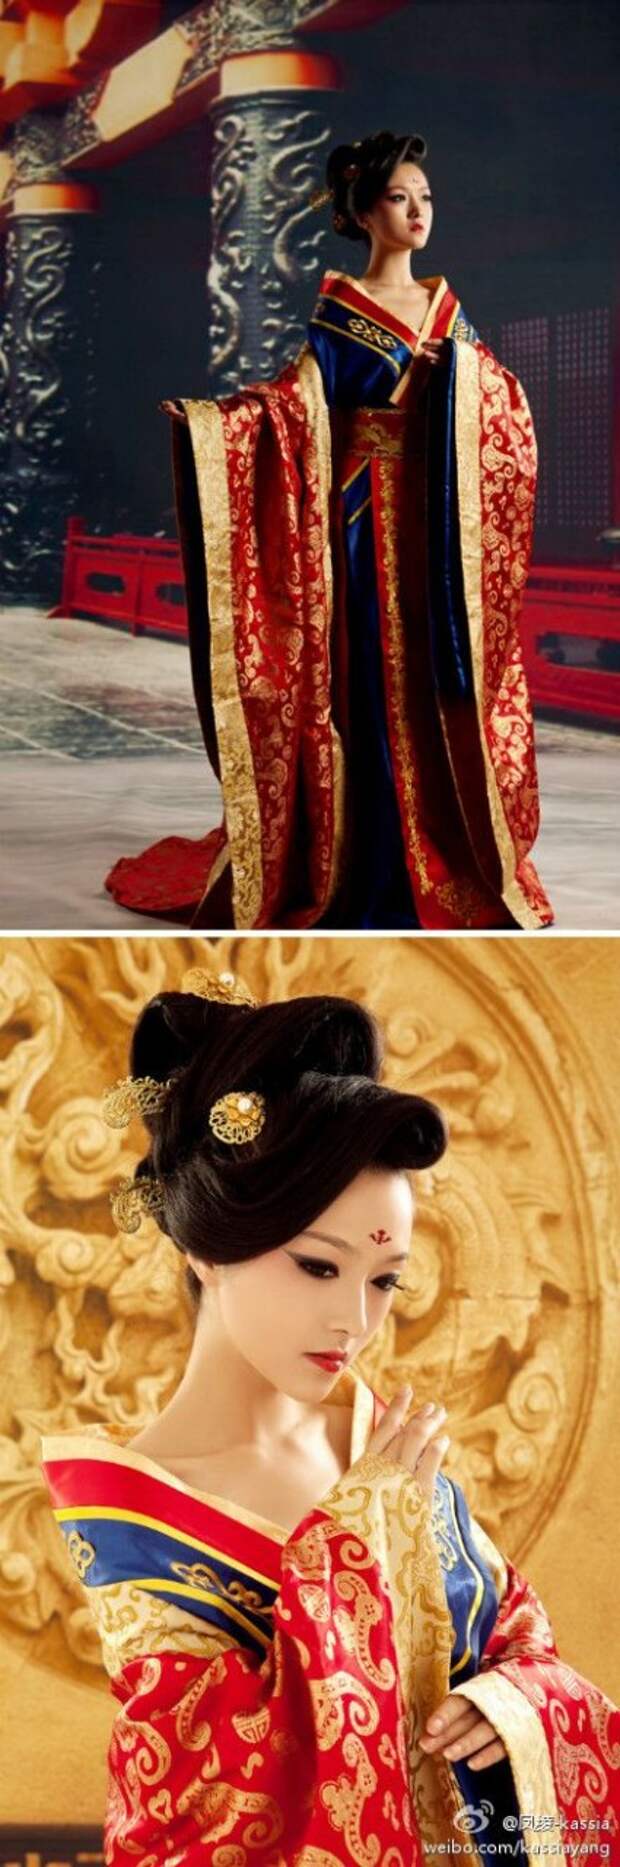 Chinese dress - Hanfu: 